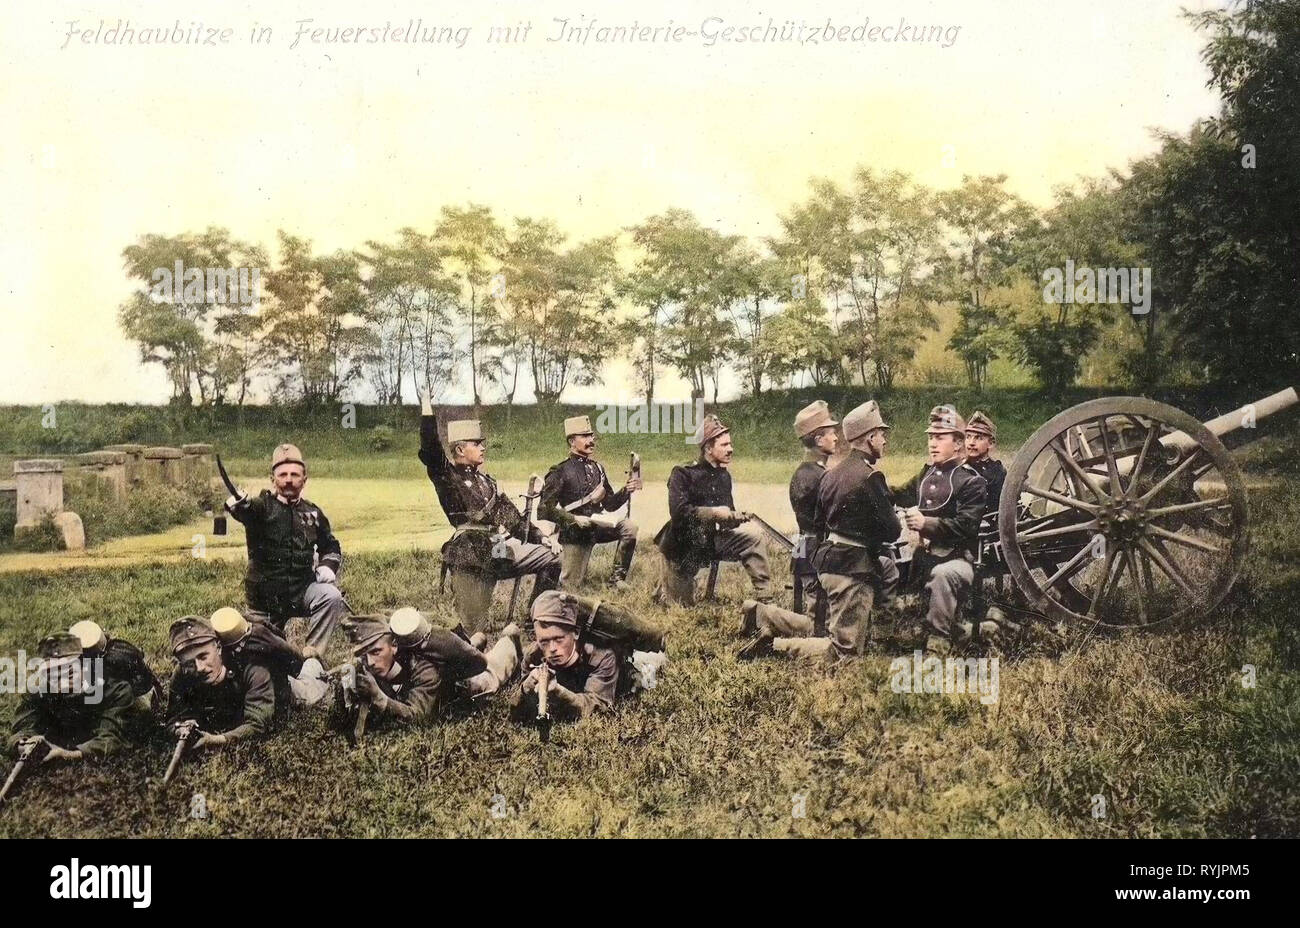 10 cm M. 99 Feldhaubitze, österreichisch-ungarischen Armee, 1910, Aussig, Theresienstadt, neuen Feldhaubitze in Feuerstellung, Tschechische Republik Stockfoto